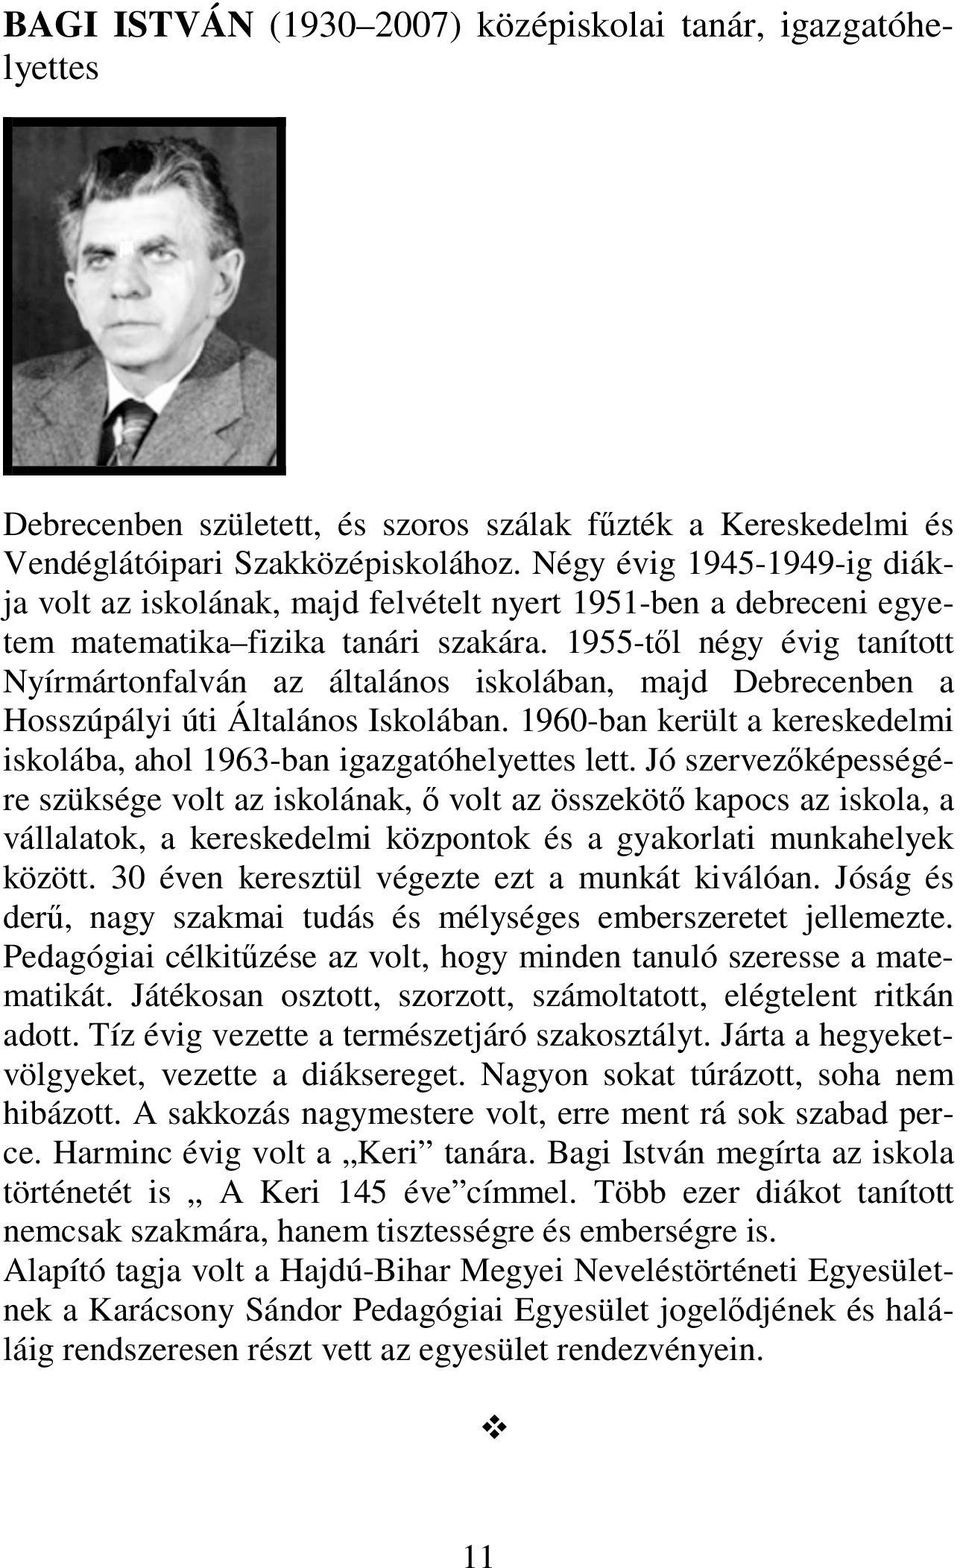 1955-től négy évig tanított Nyírmártonfalván az általános iskolában, majd Debrecenben a Hosszúpályi úti Általános Iskolában.